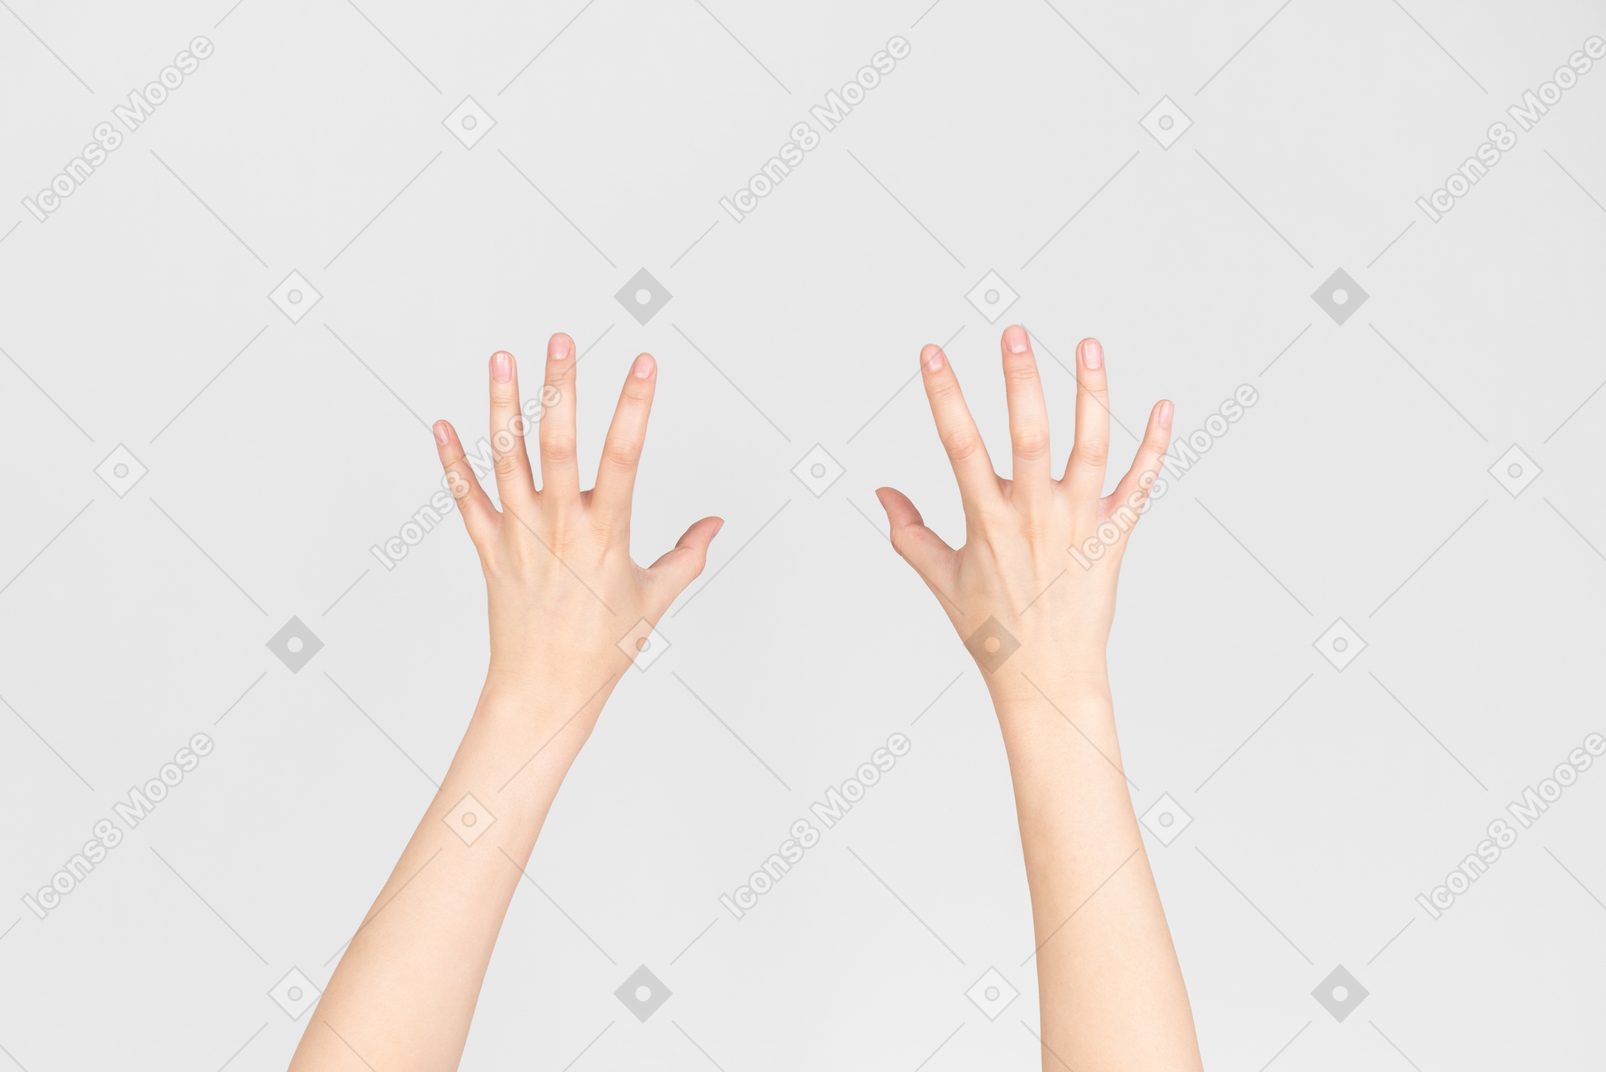 Frauenhänden von oben gezeigt